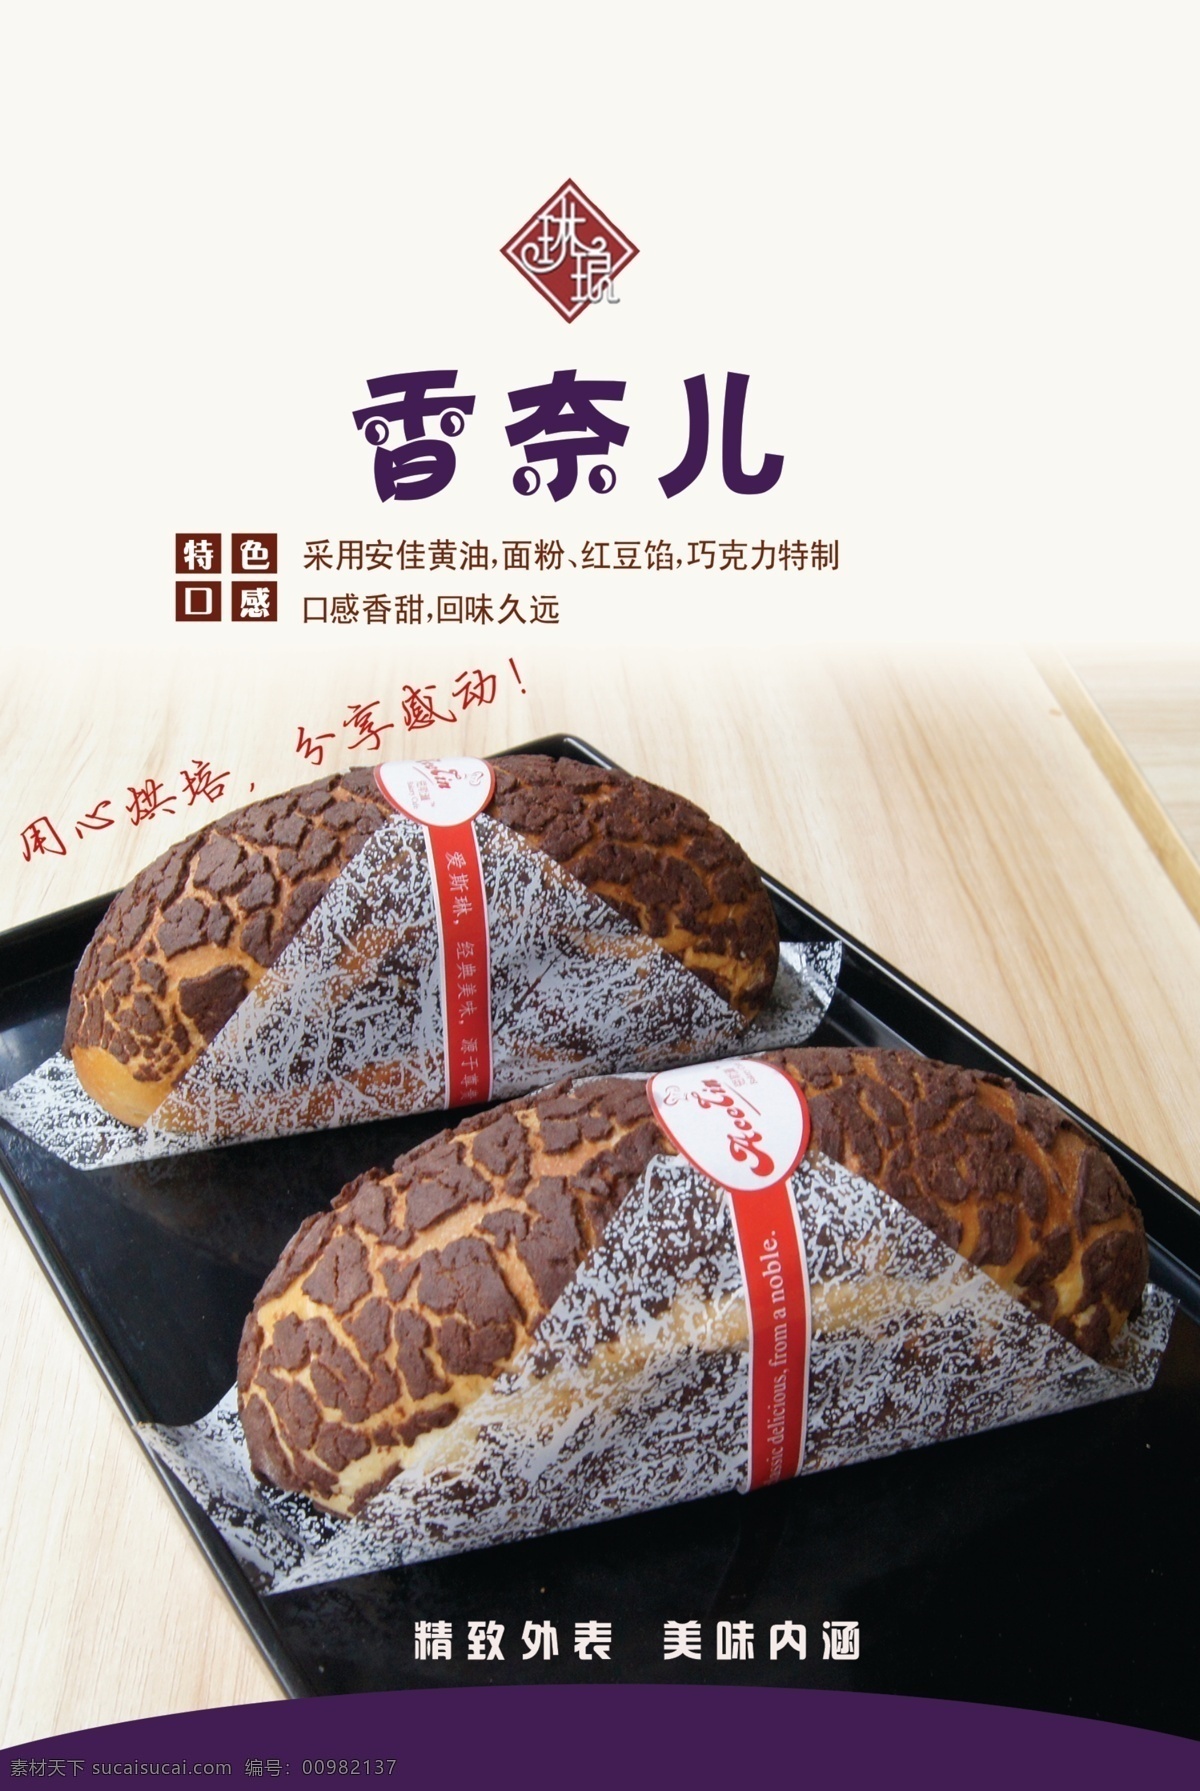 香奈儿 蛋糕 广告设计模板 烘培 红豆 面包 源文件 琳琅 psd源文件 餐饮素材